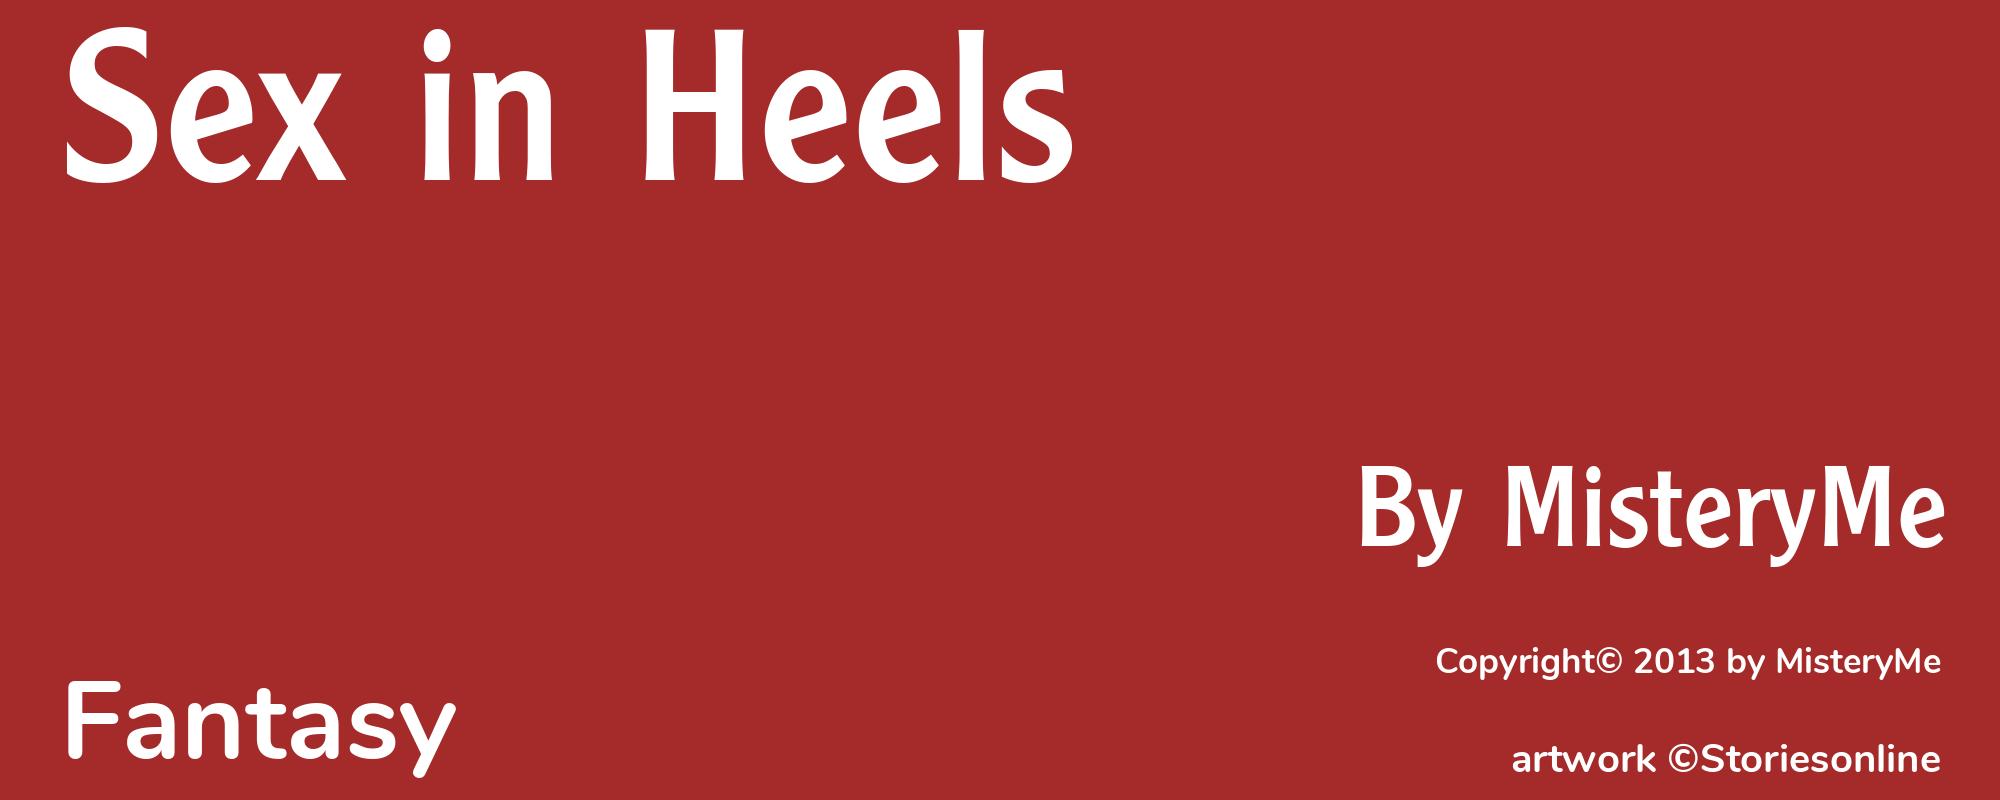 Sex in Heels - Cover